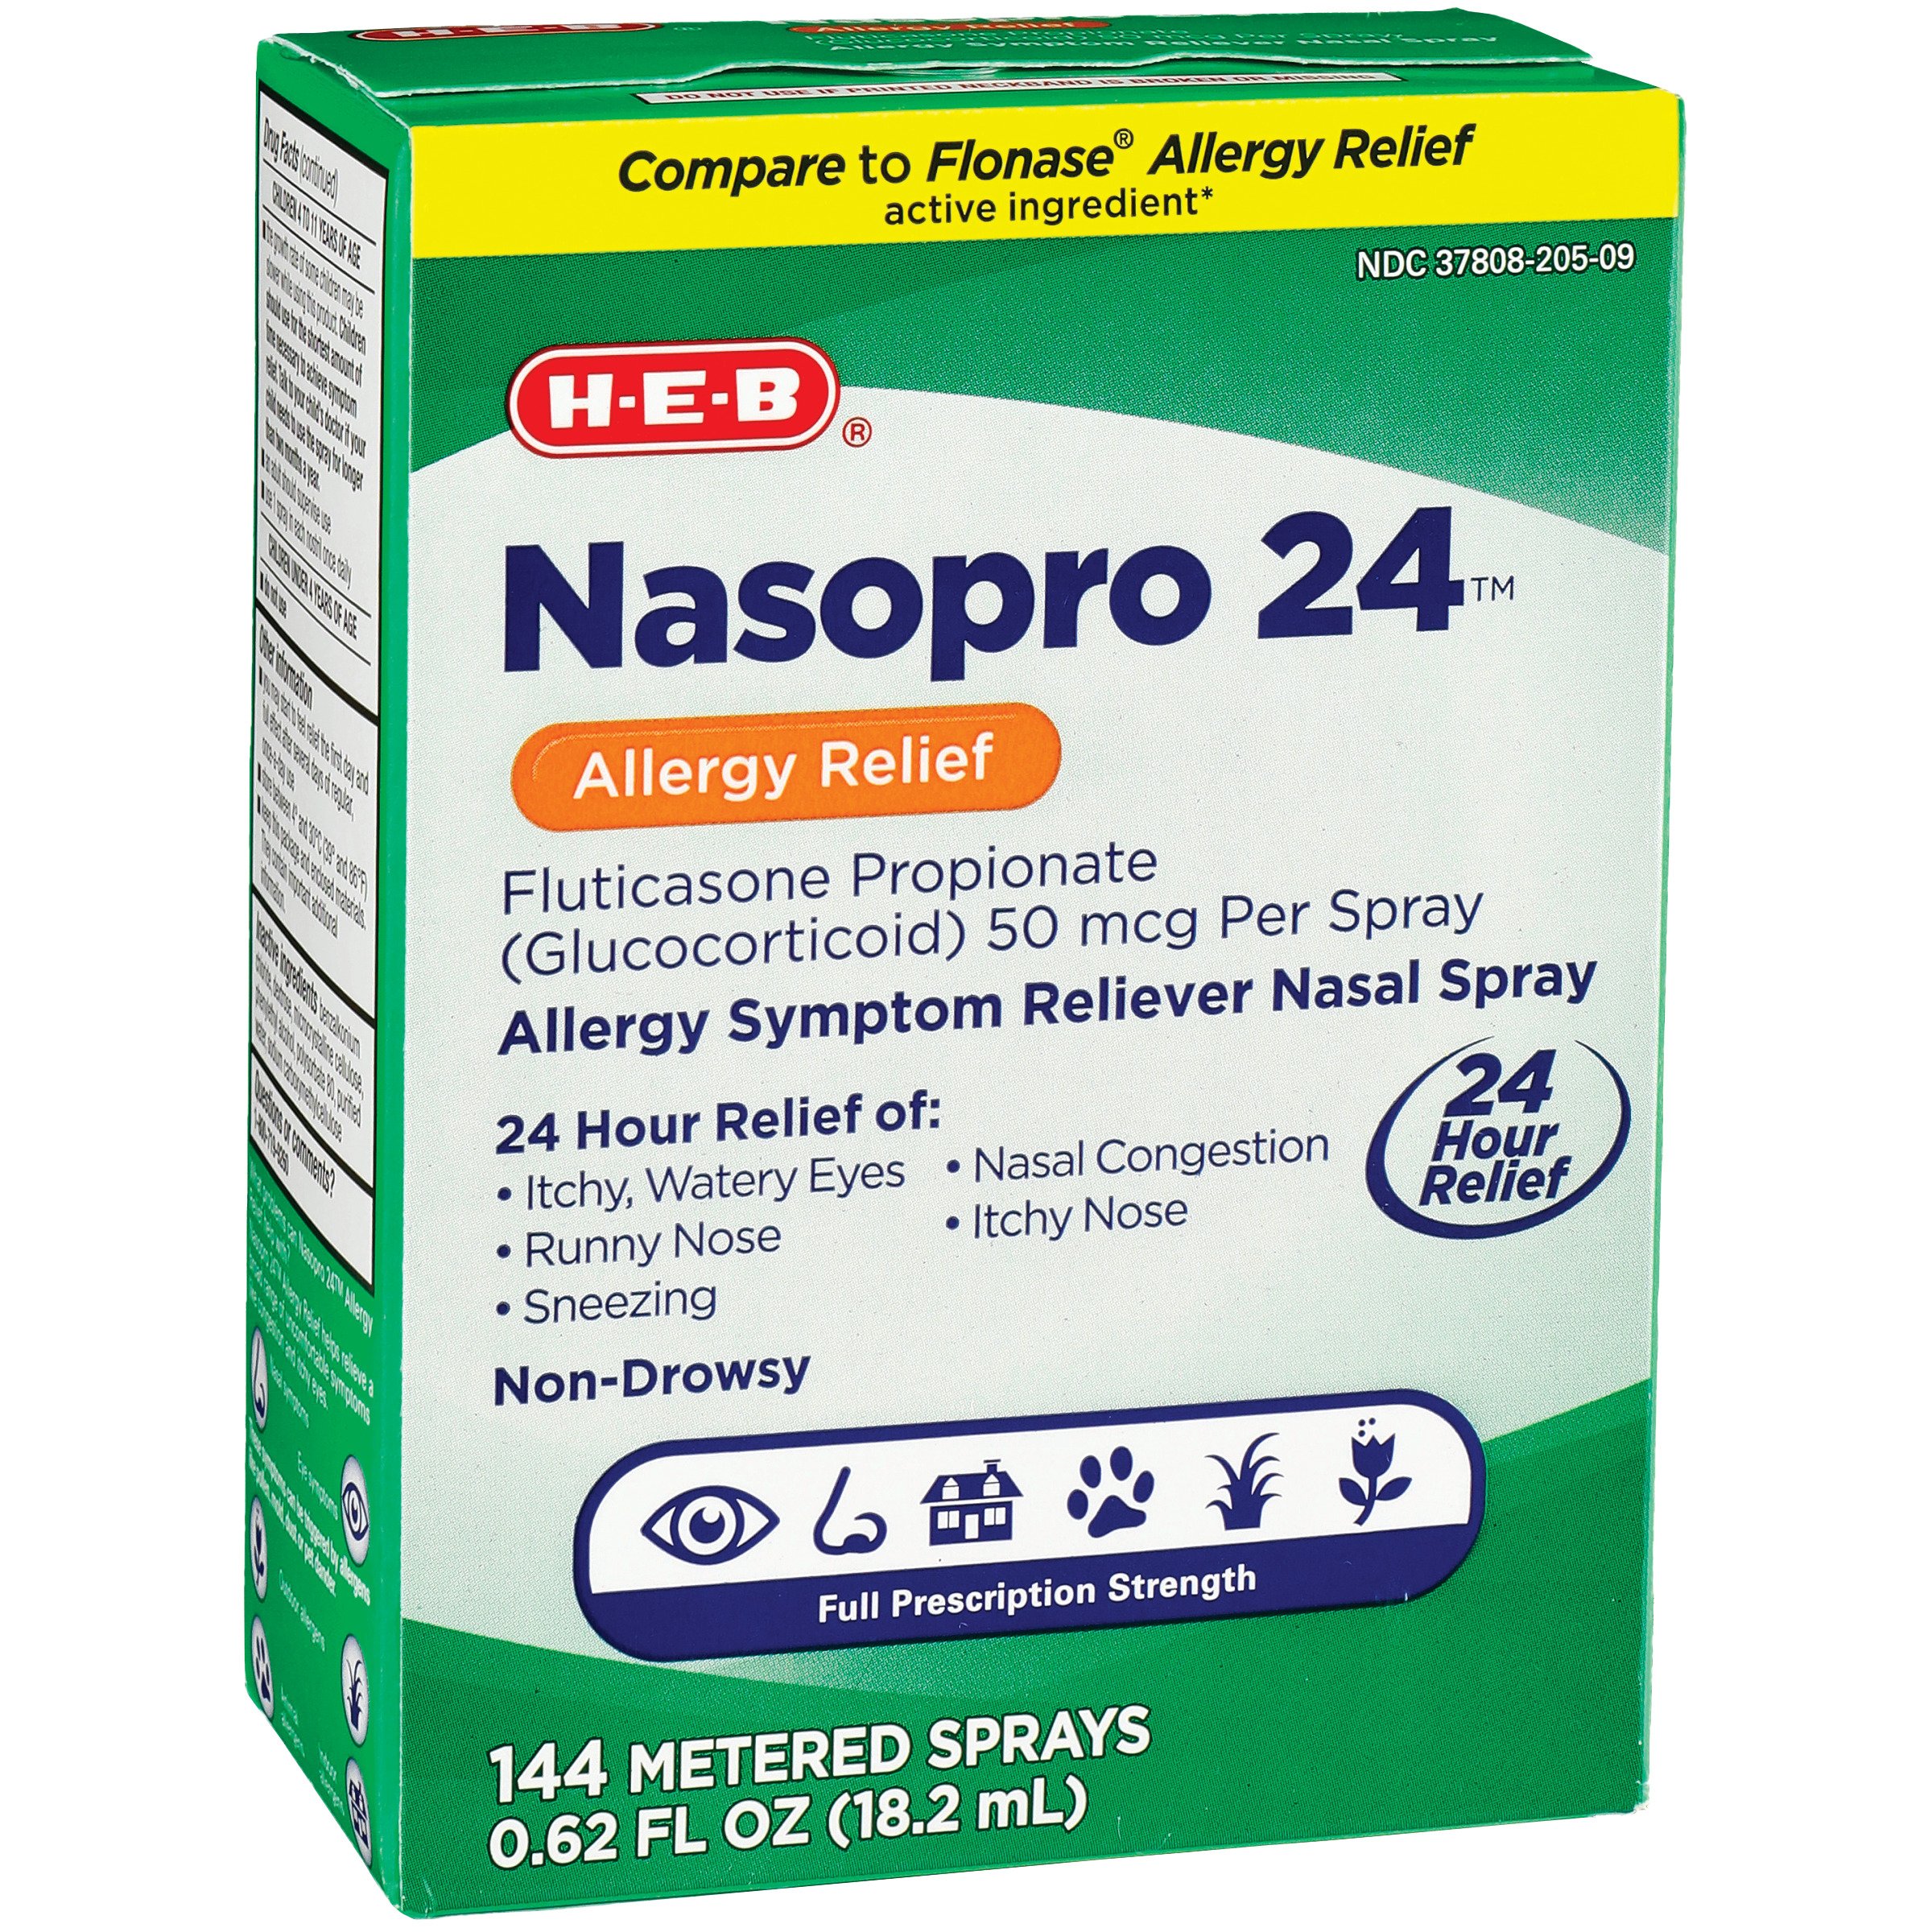 H-E-B Nasopro 24 Allergy Relief - Shop Sinus & Allergy